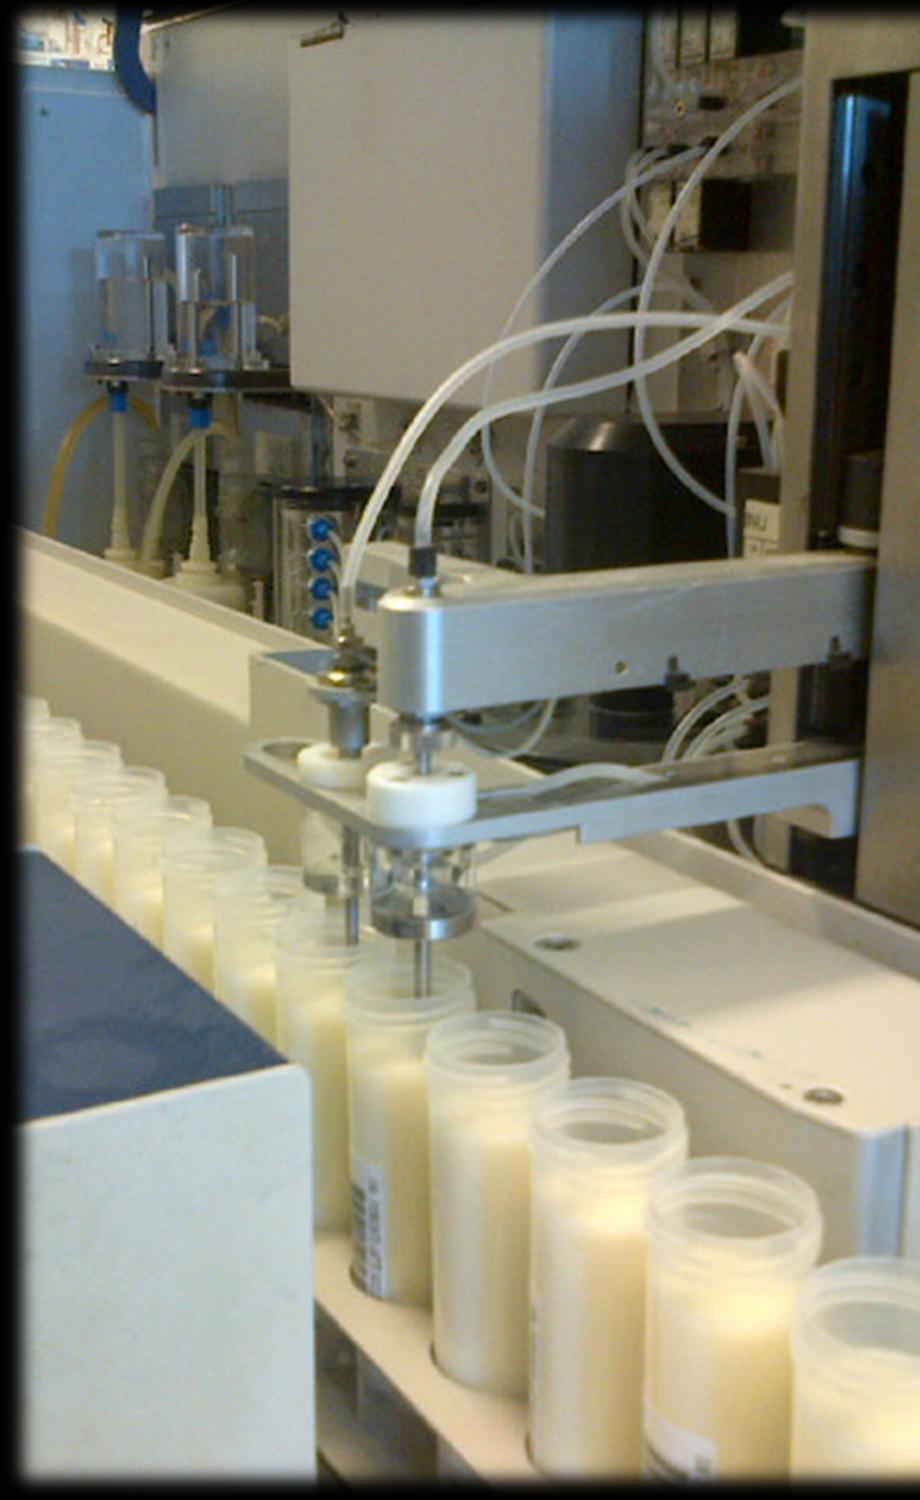 Parametri analizzati Grasso (%, PP o PV) Proteina (%, PP o PV) Lattosio (%, PP o PV) Cellule Somatiche (unità/ml) Carica Batterica